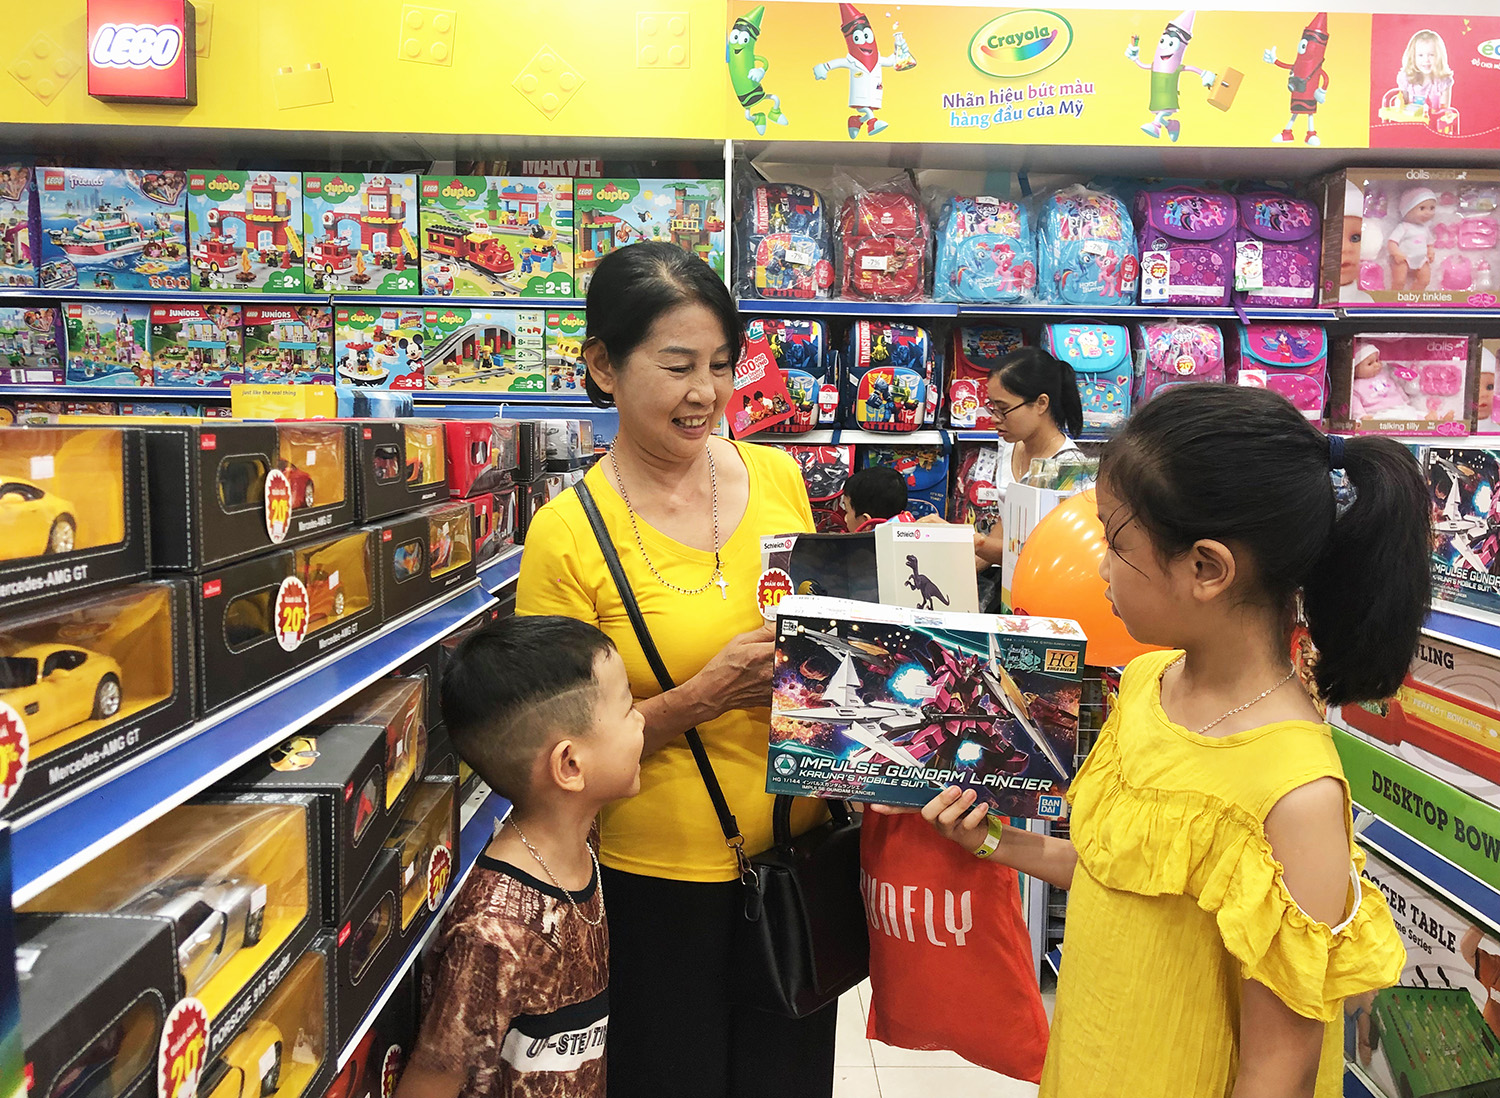 Nhiều gia đình đã chọn mua đồ chơi cho trẻ em tại các Trung tâm thương mại lớn như Vincom để đảm bảo chất lượng.